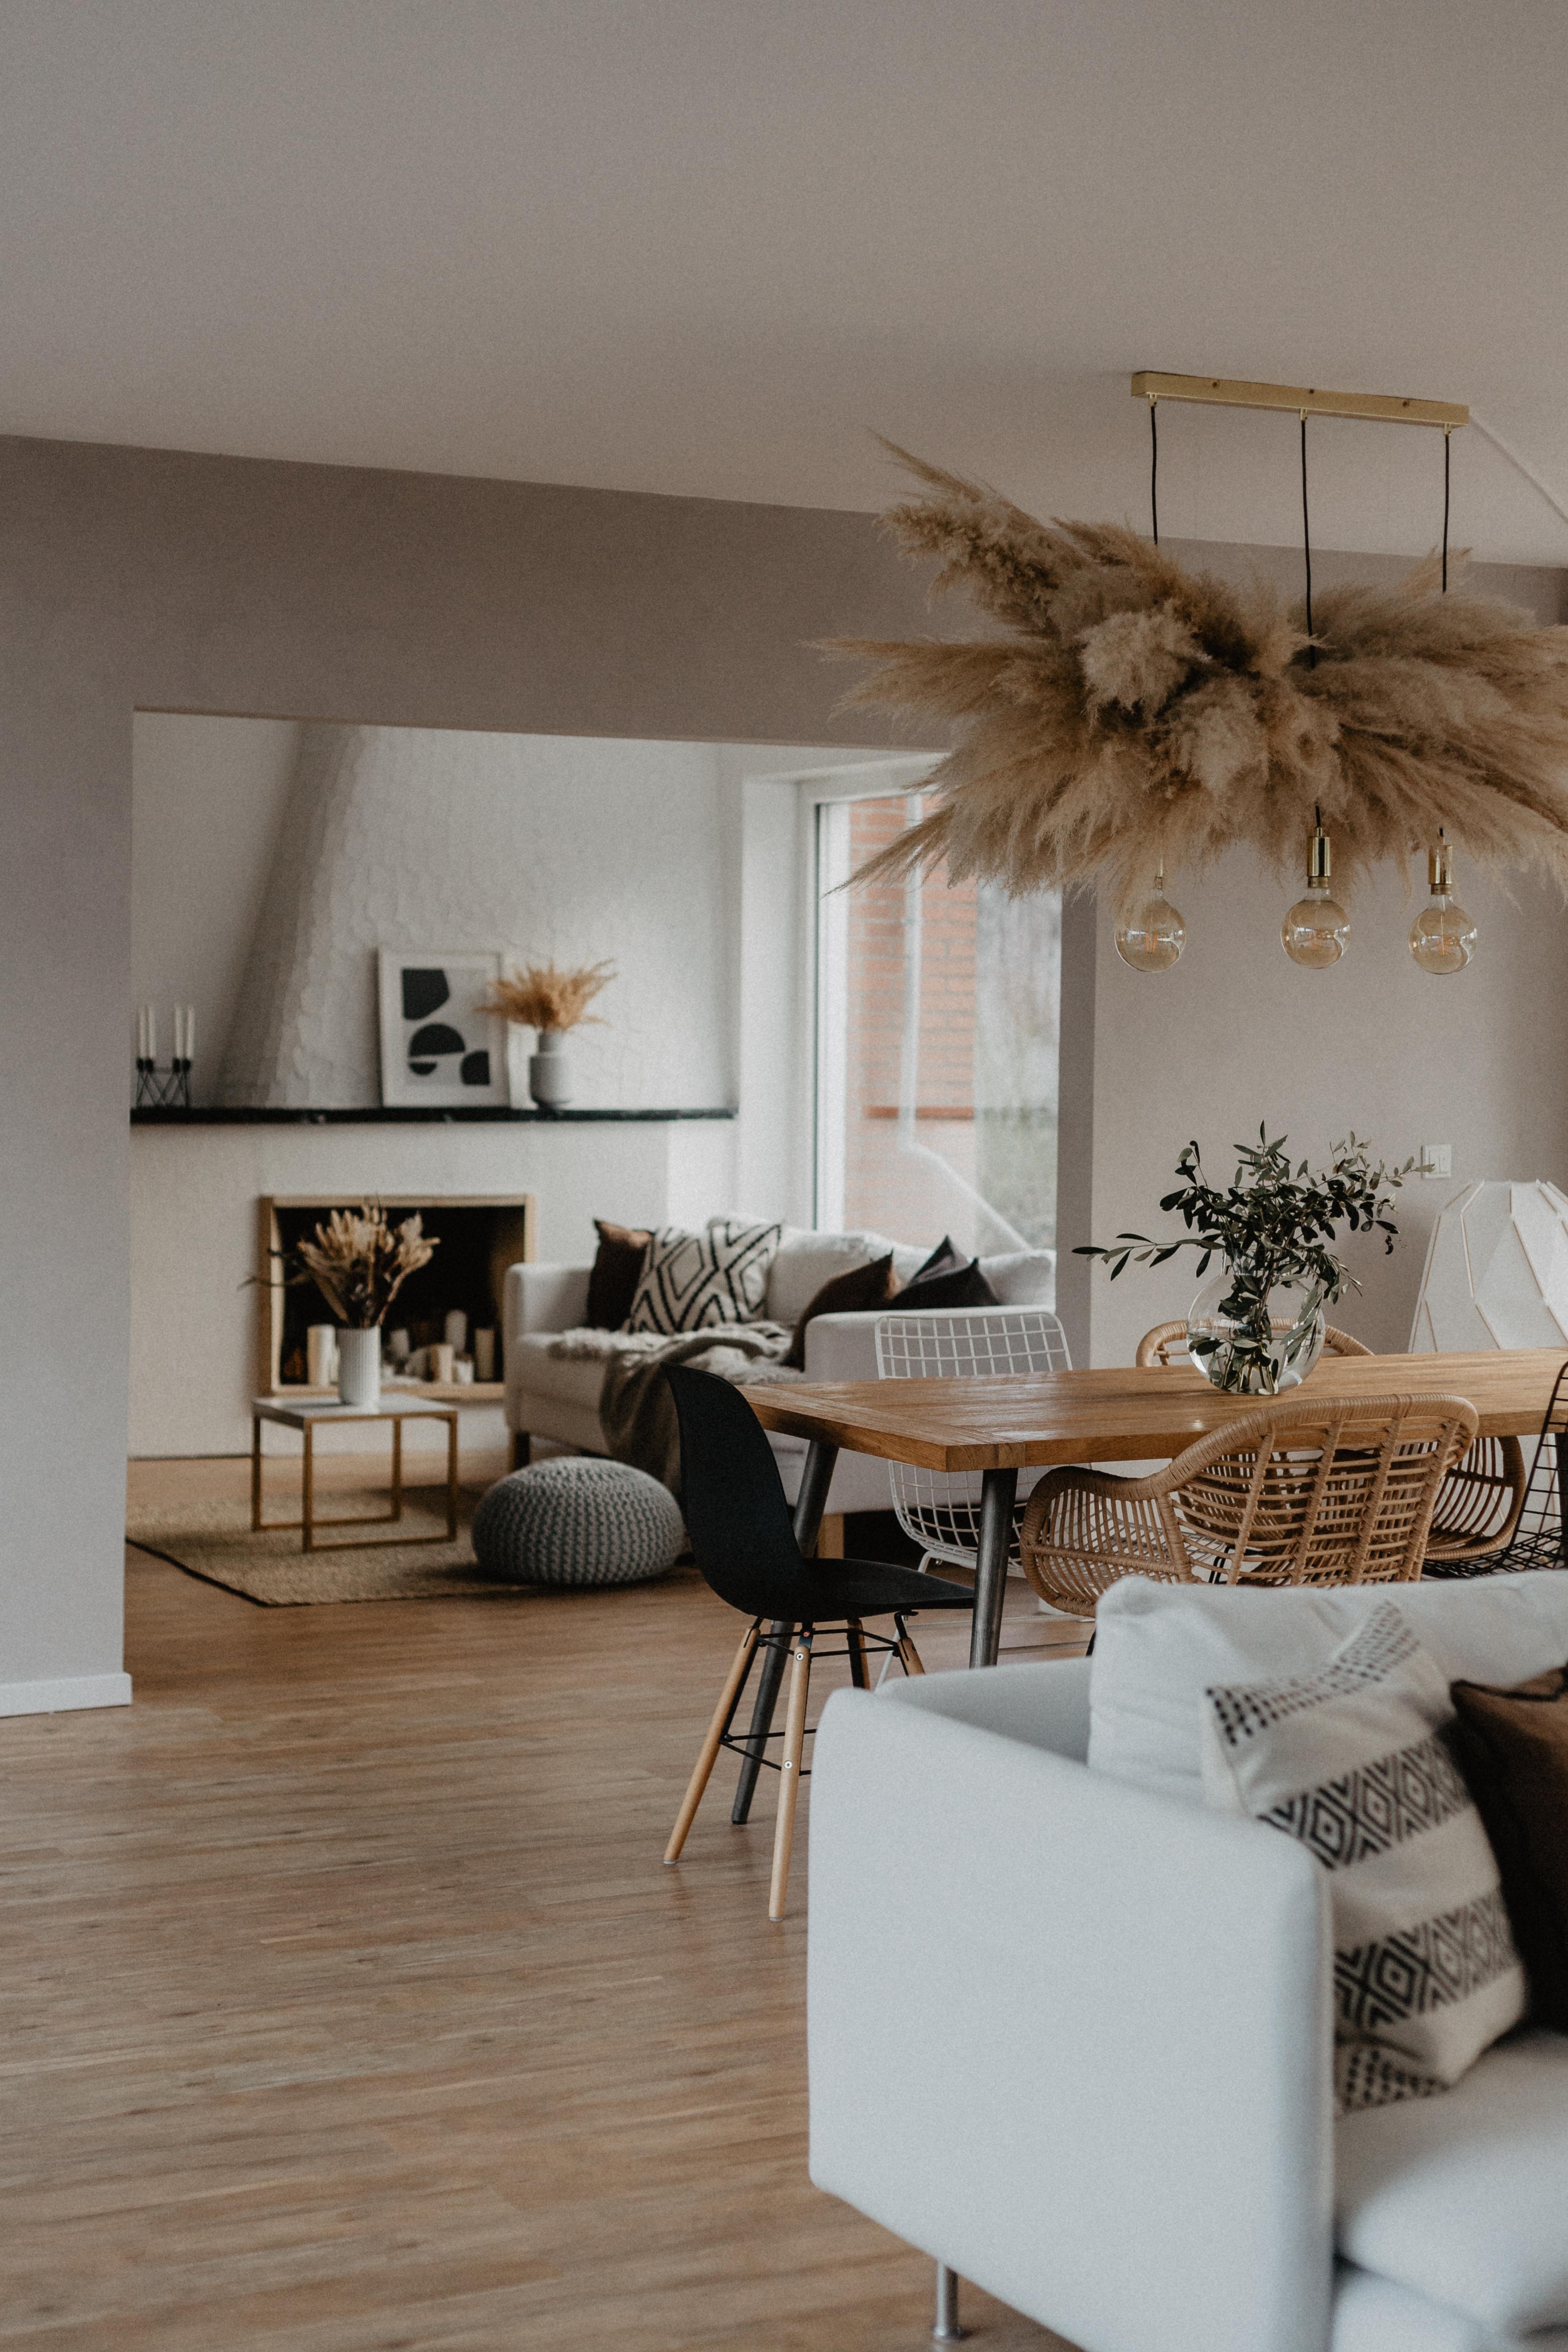 #Kalkwand #renovierung #wohnzimmer #livingroom #interiordesign